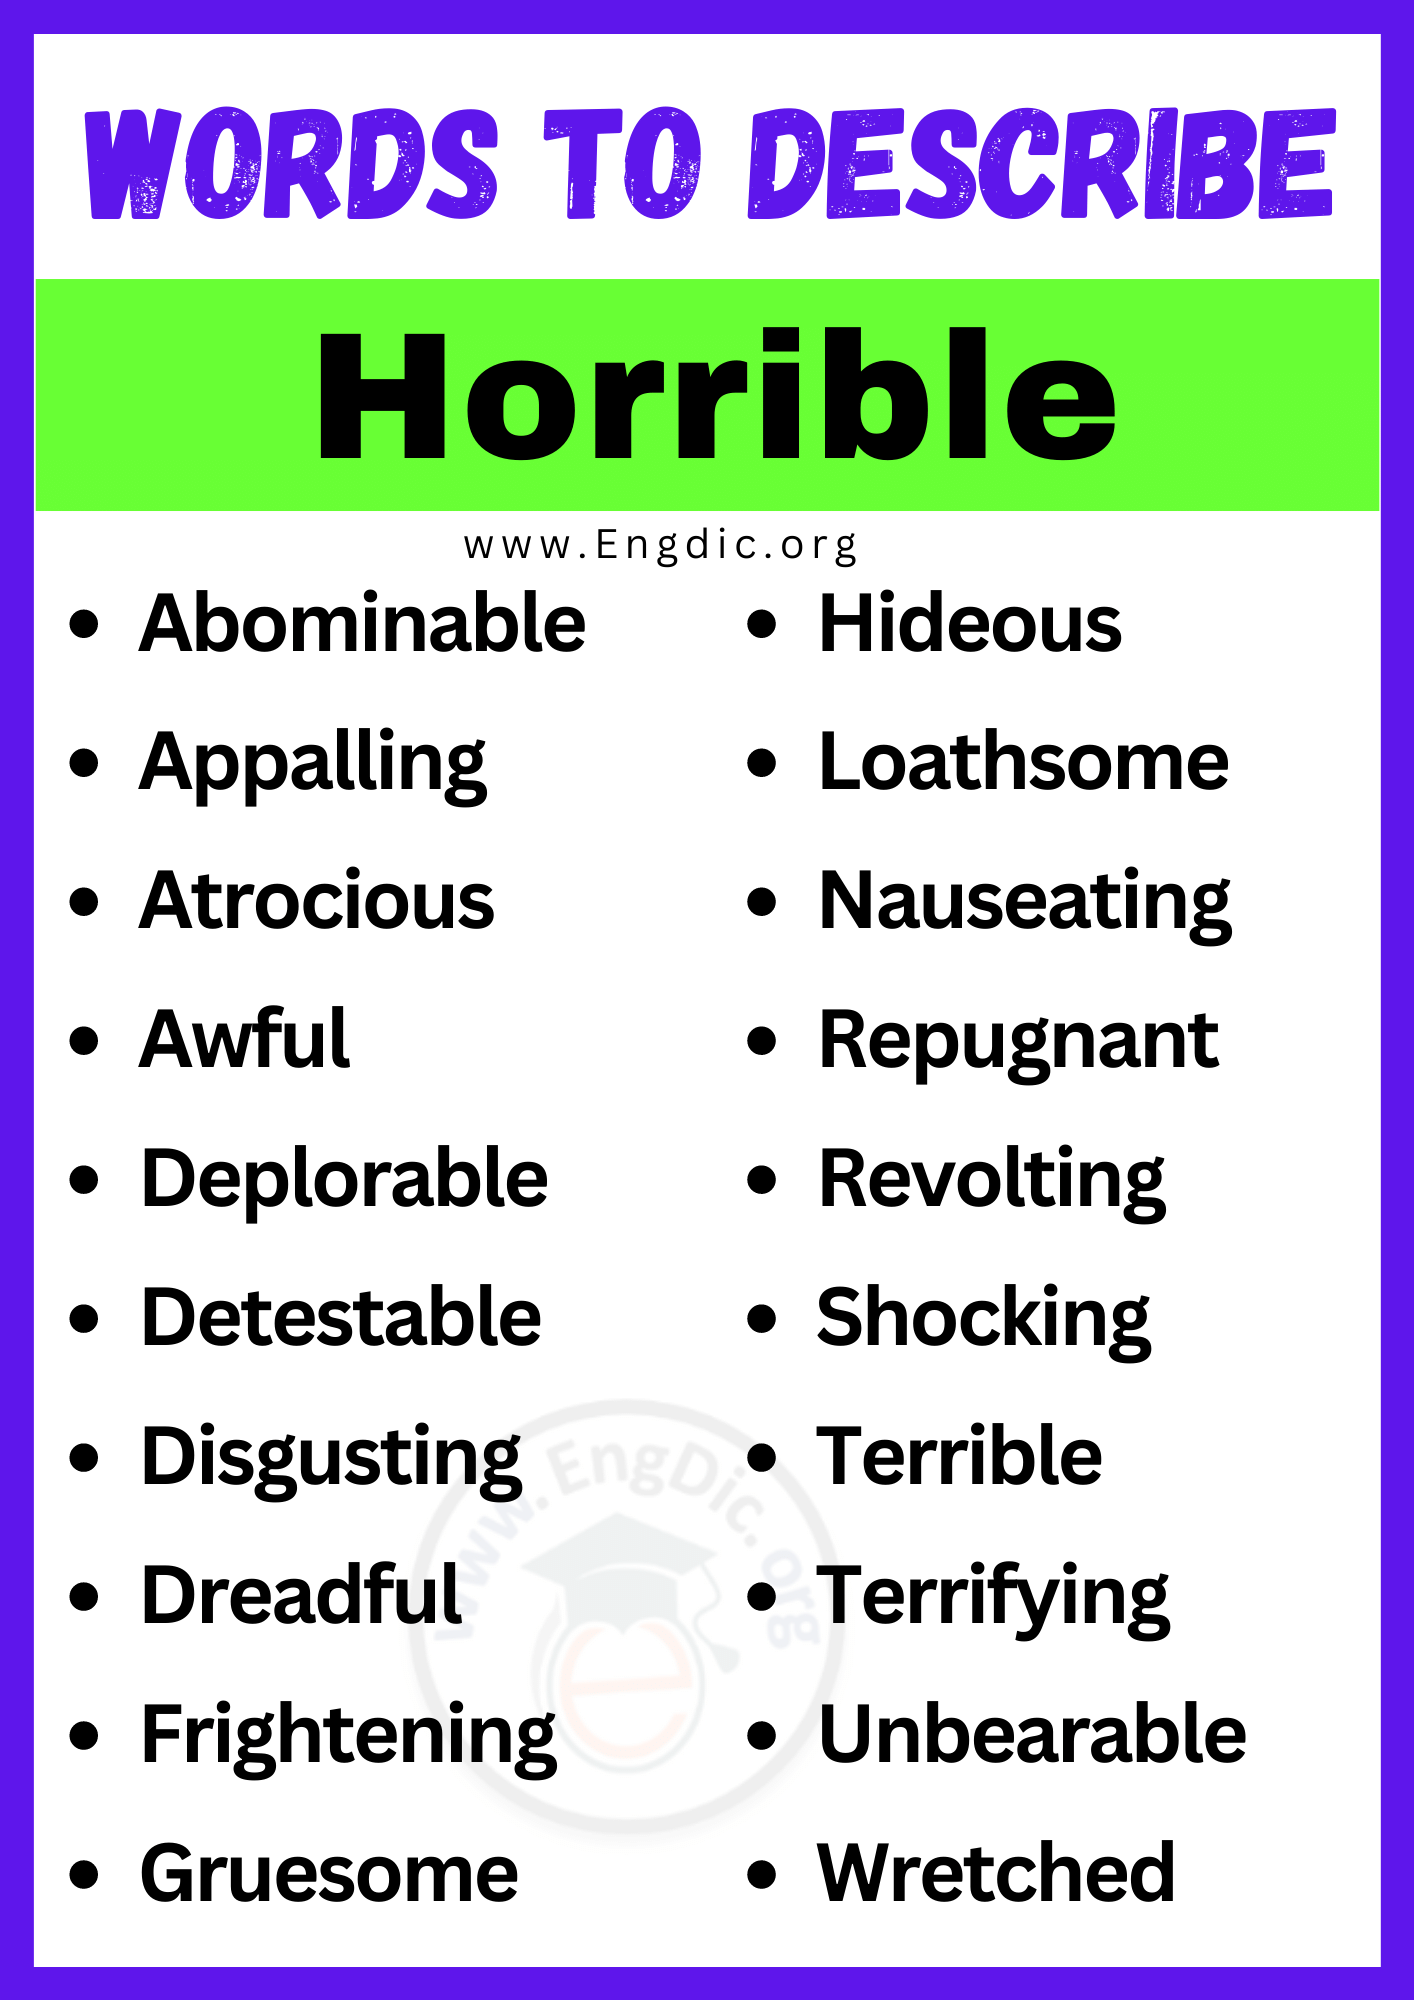 Words to Describe Horrible